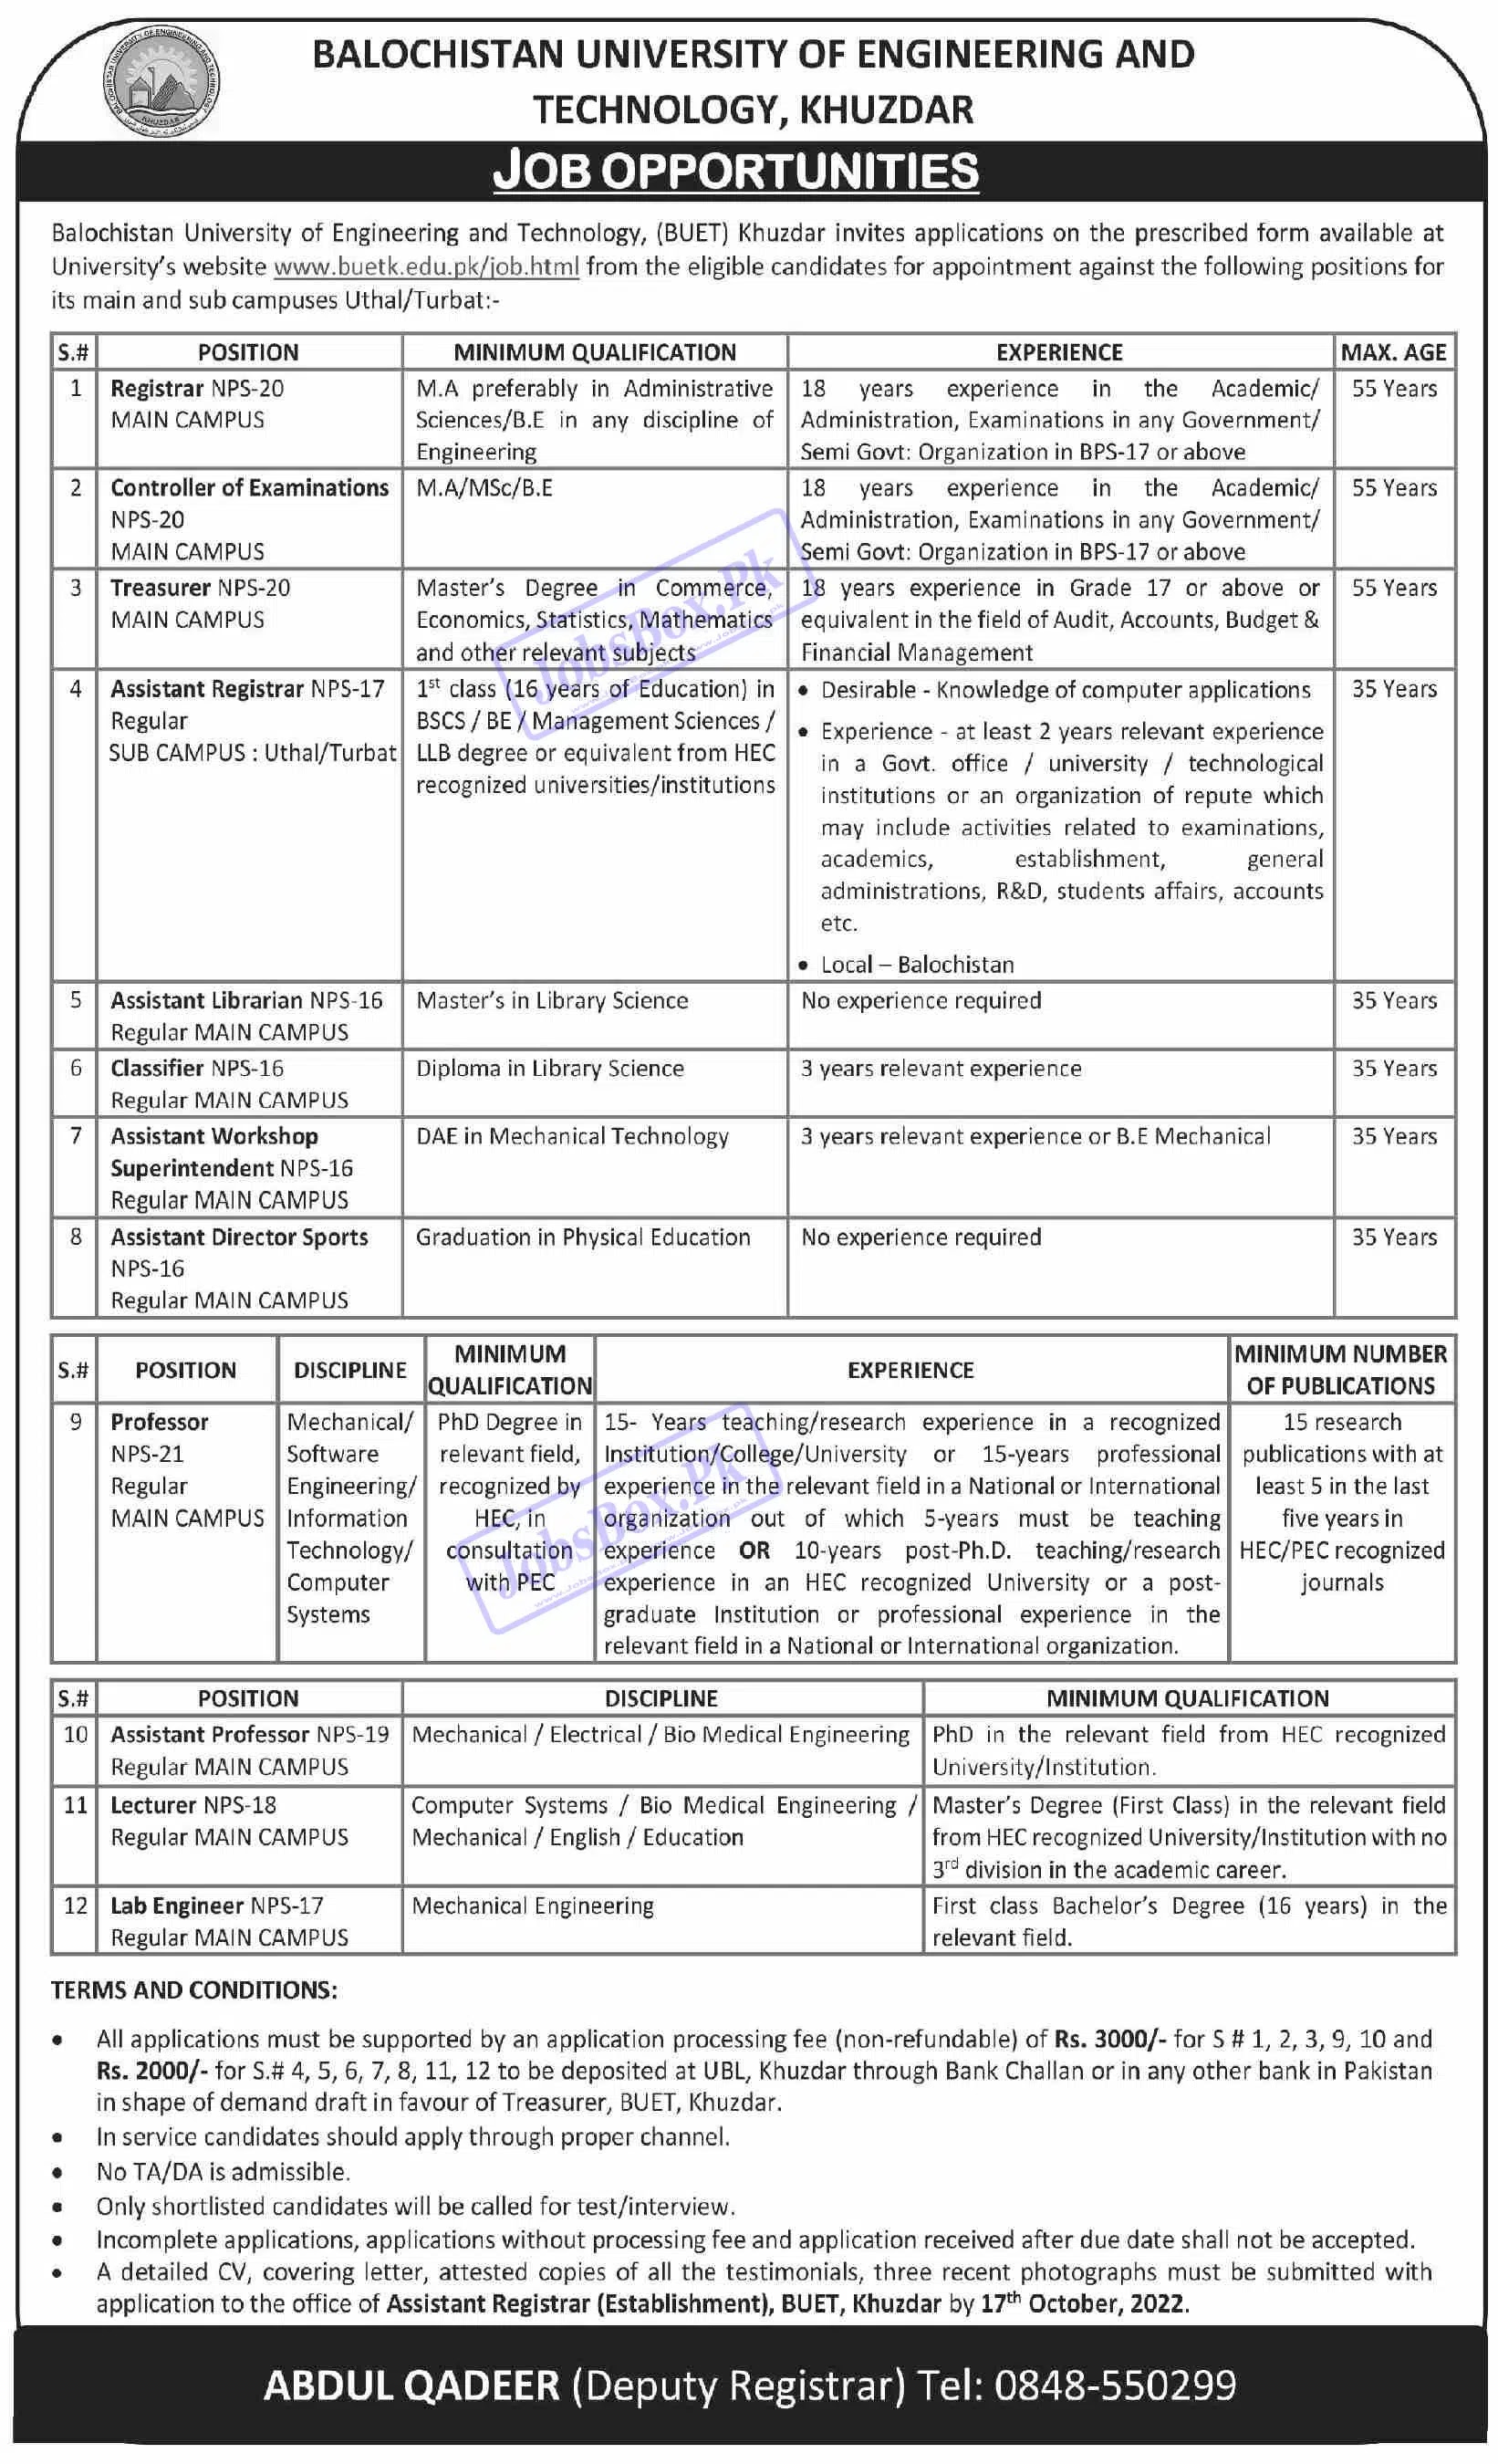 BUET Jobs 2022 - Balochistan University of Engineering & Technology Jobs 2022 - www.buetk.edu.pk Online Apply